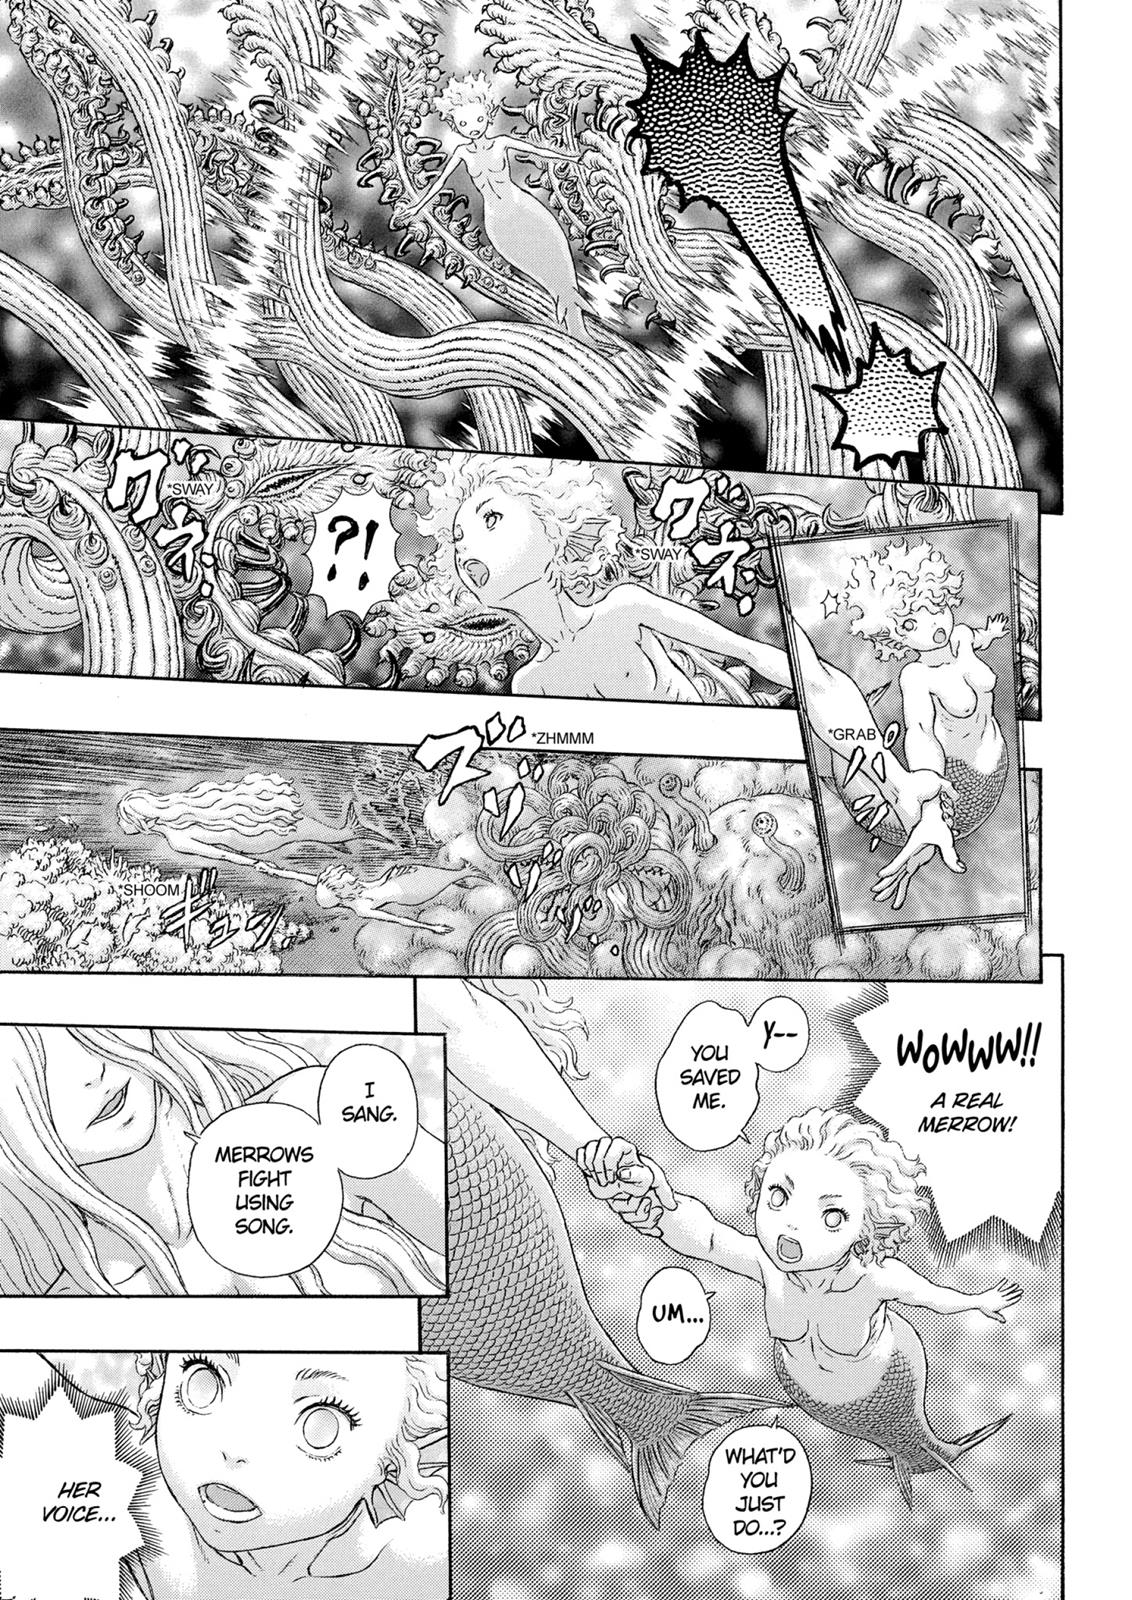 Berserk Manga Chapter 325 image 18